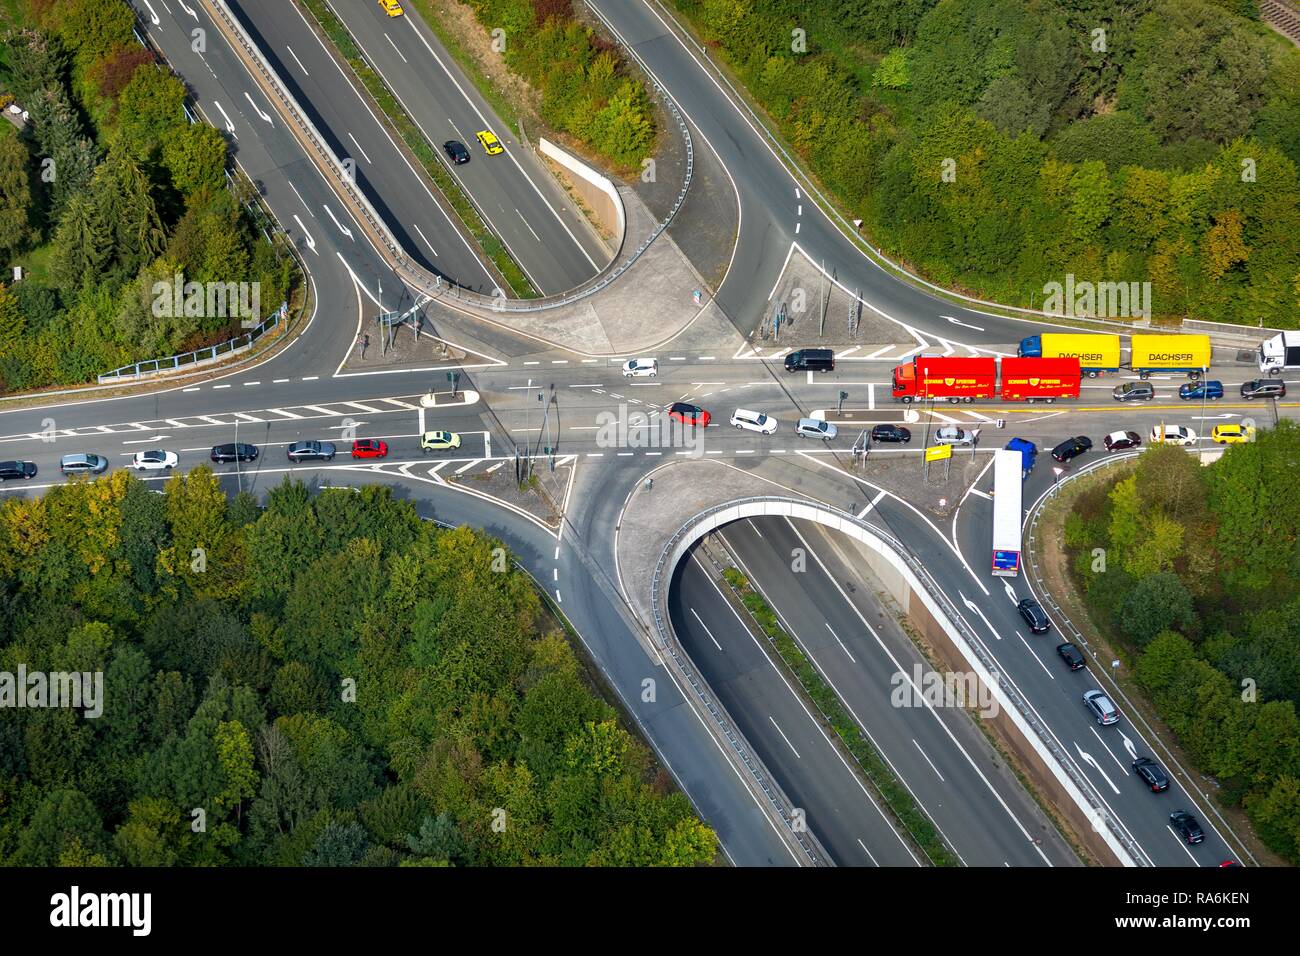 Vista aérea, en la intersección de la autopista federal 54 y la autopista federal 508, Kreuztal, Renania del Norte-Westfalia, Alemania Foto de stock